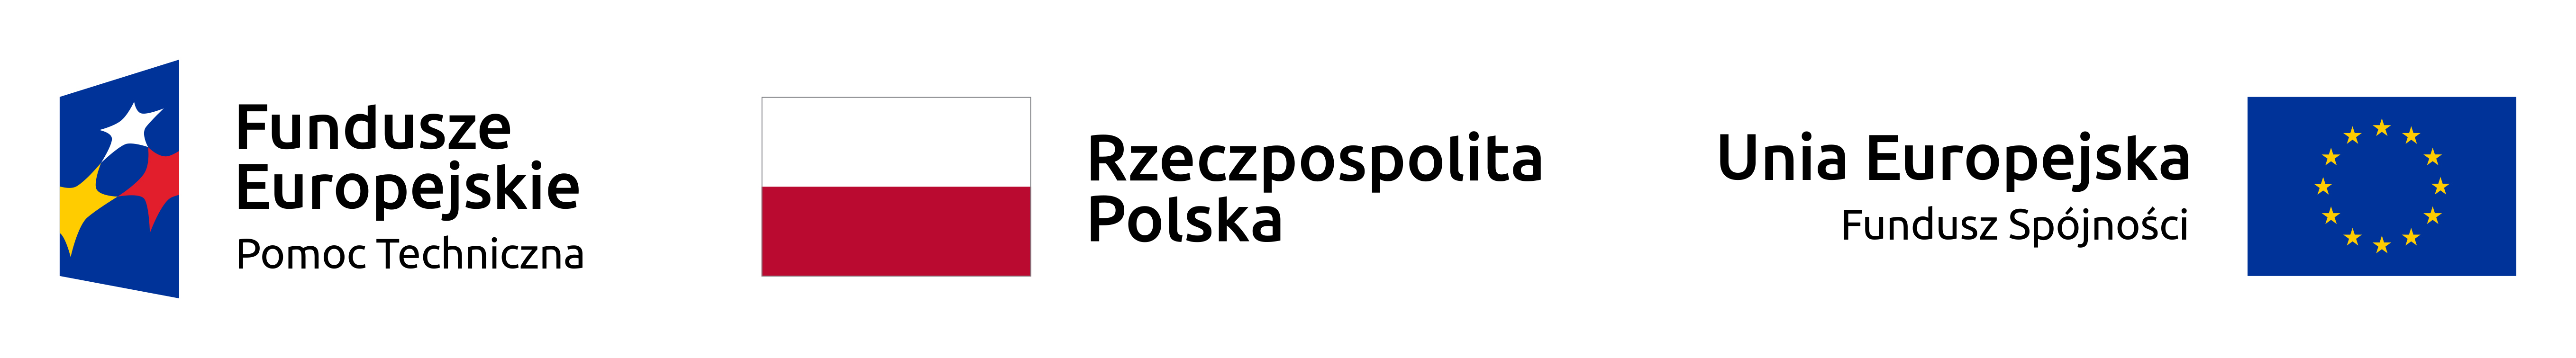 Na zdjęciu znajduje się logotyp Funduszy Euroejskich z napisem "Pomoc Techniczna". flaga Rzeczpospolitej Polskiej oraz logotyp Unii Europejskiej z podpisem "Fundusz Spójności".